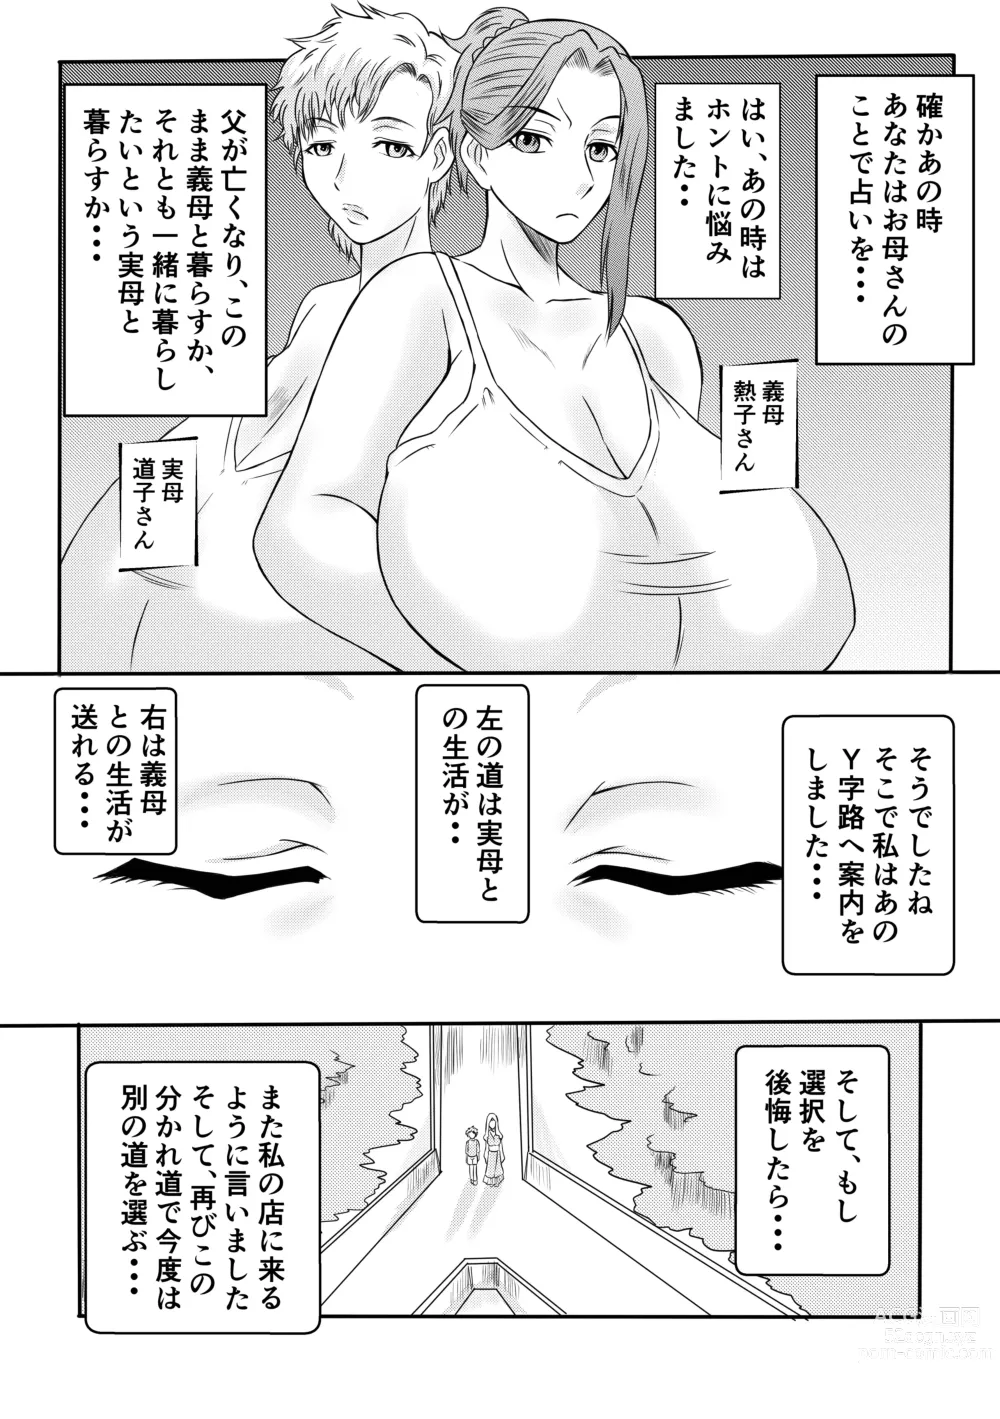 Page 9 of doujinshi Henna Hanashi... Hito no Jinsei Owarai Gekijou